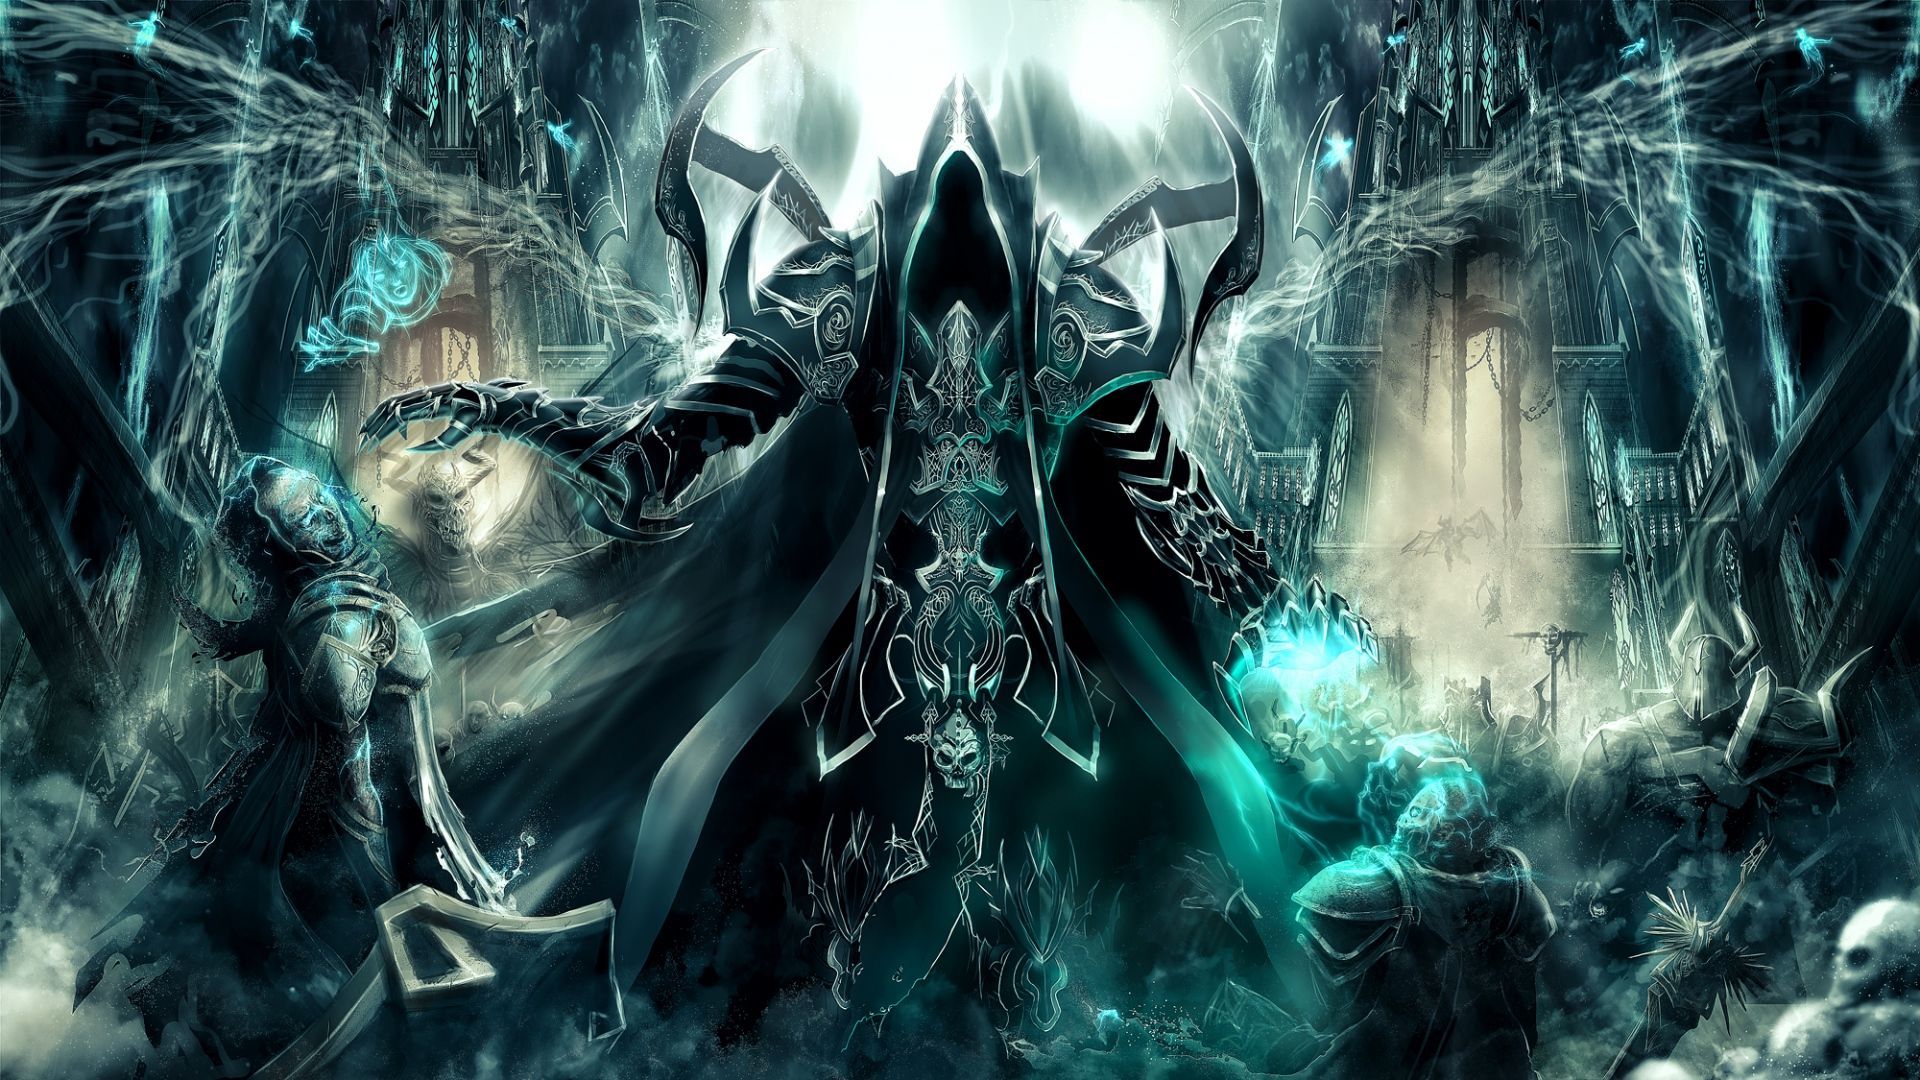 Diablo 3 , HD Wallpaper & Backgrounds